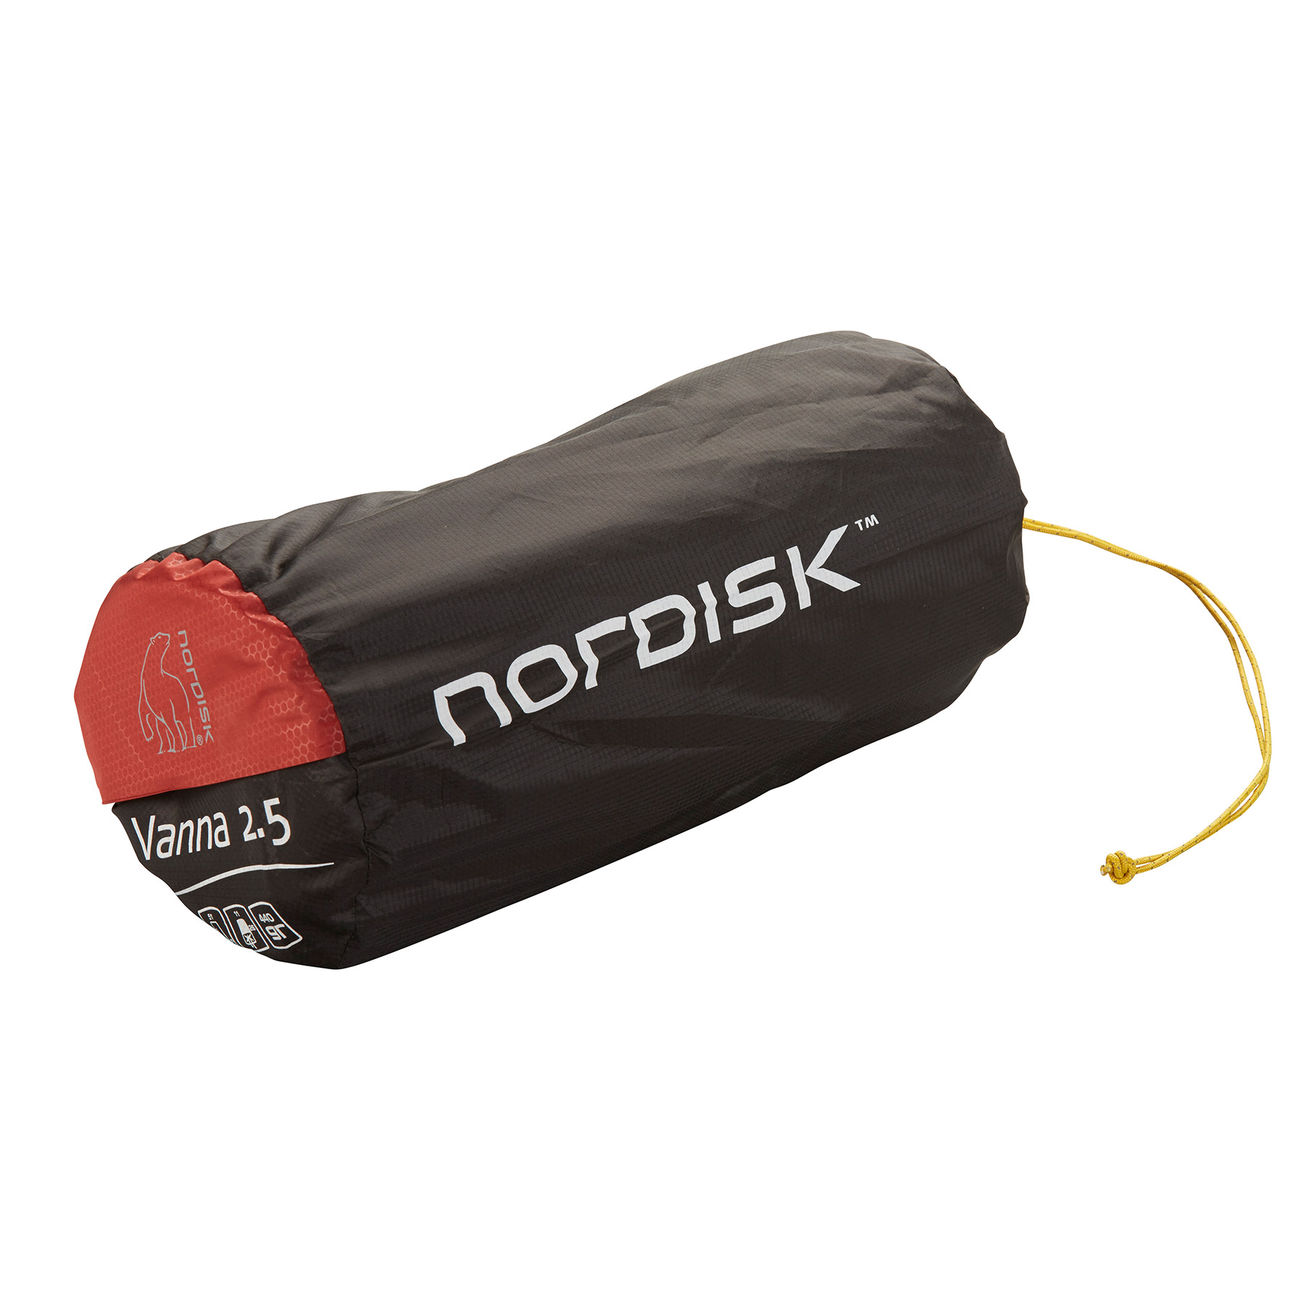 Nordisk Isomatte Vanna 2.5 rot / schwarz selbstaufblasend mit extrem kleinem Packmaß Bild 1